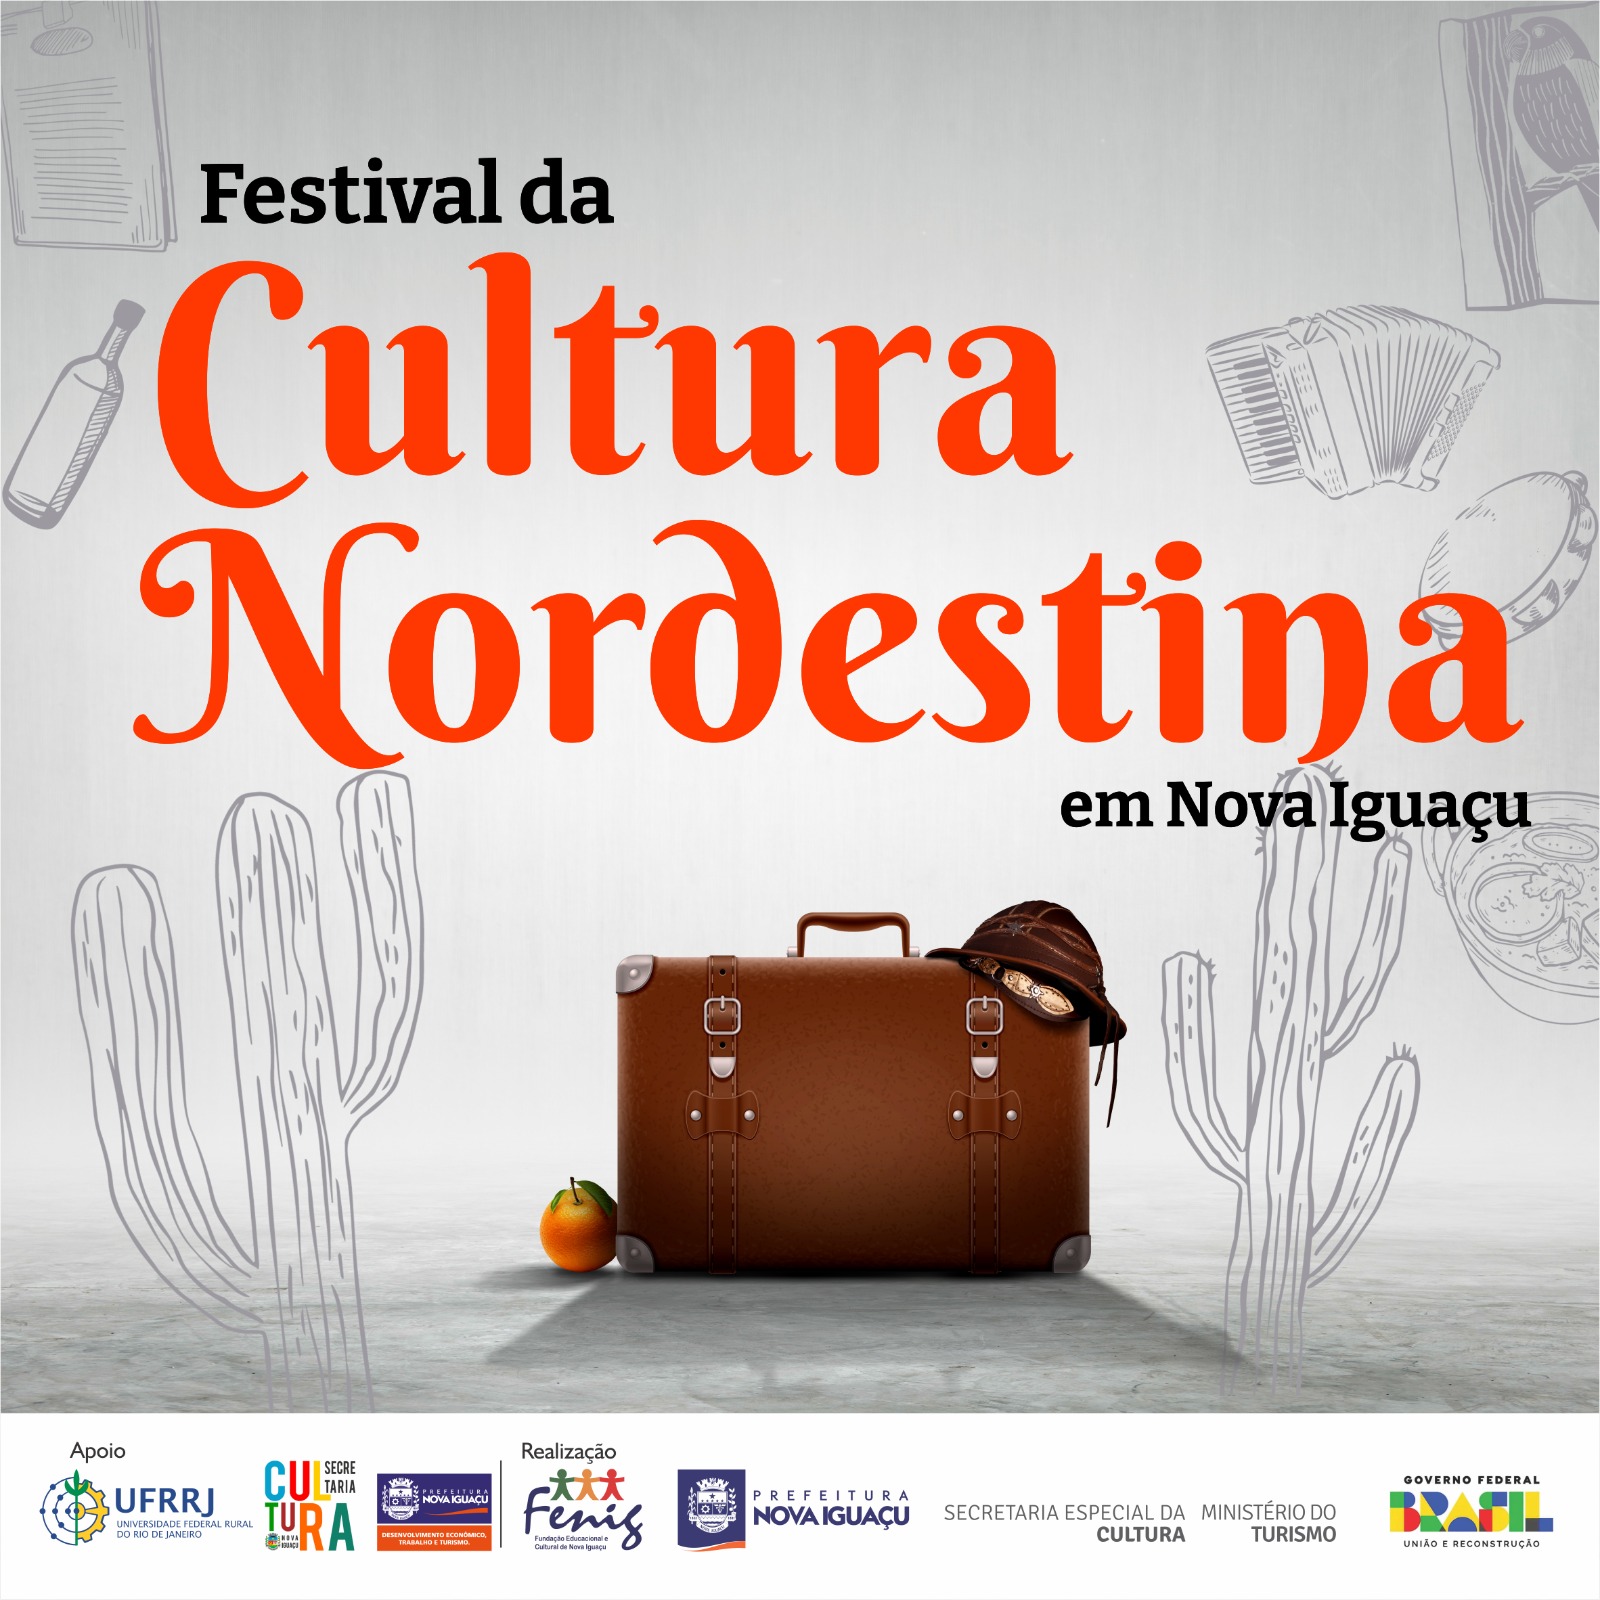 Inscrições de artistas para o Festival de Cultura Nordestina vão até sábado (15)